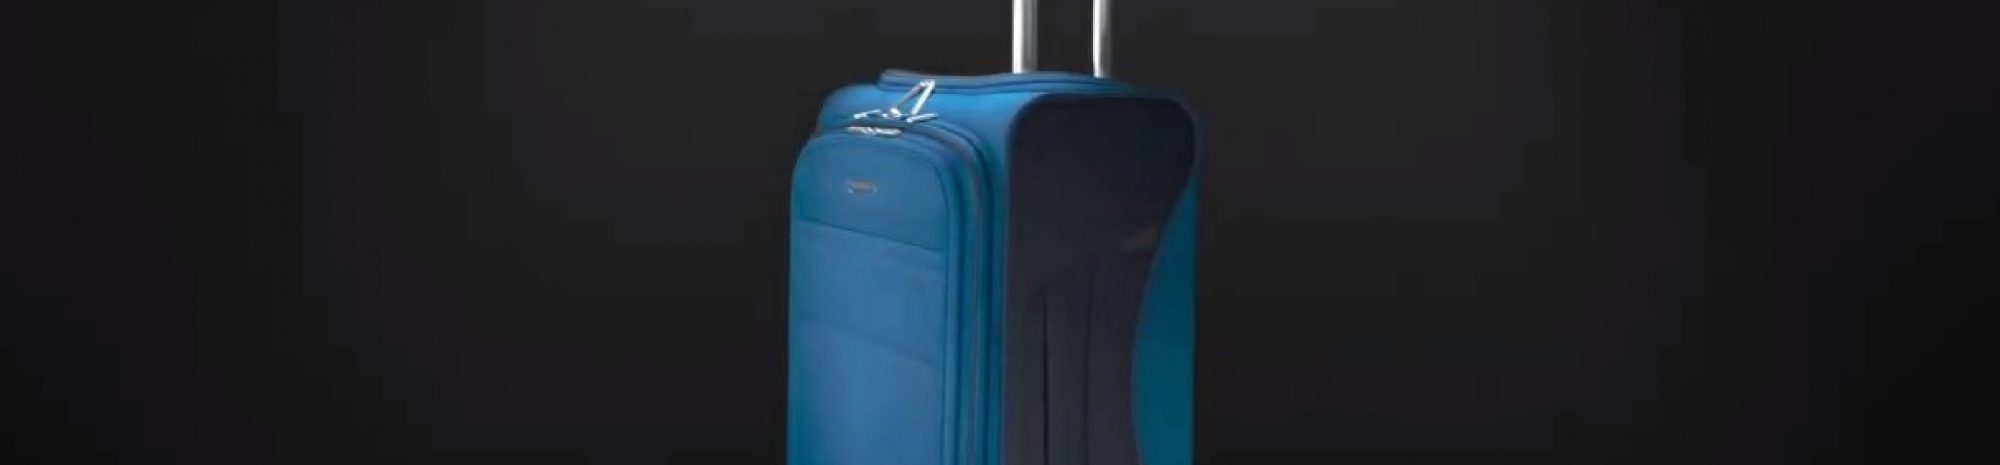 Des valises conçues avec des bouteilles de plastique